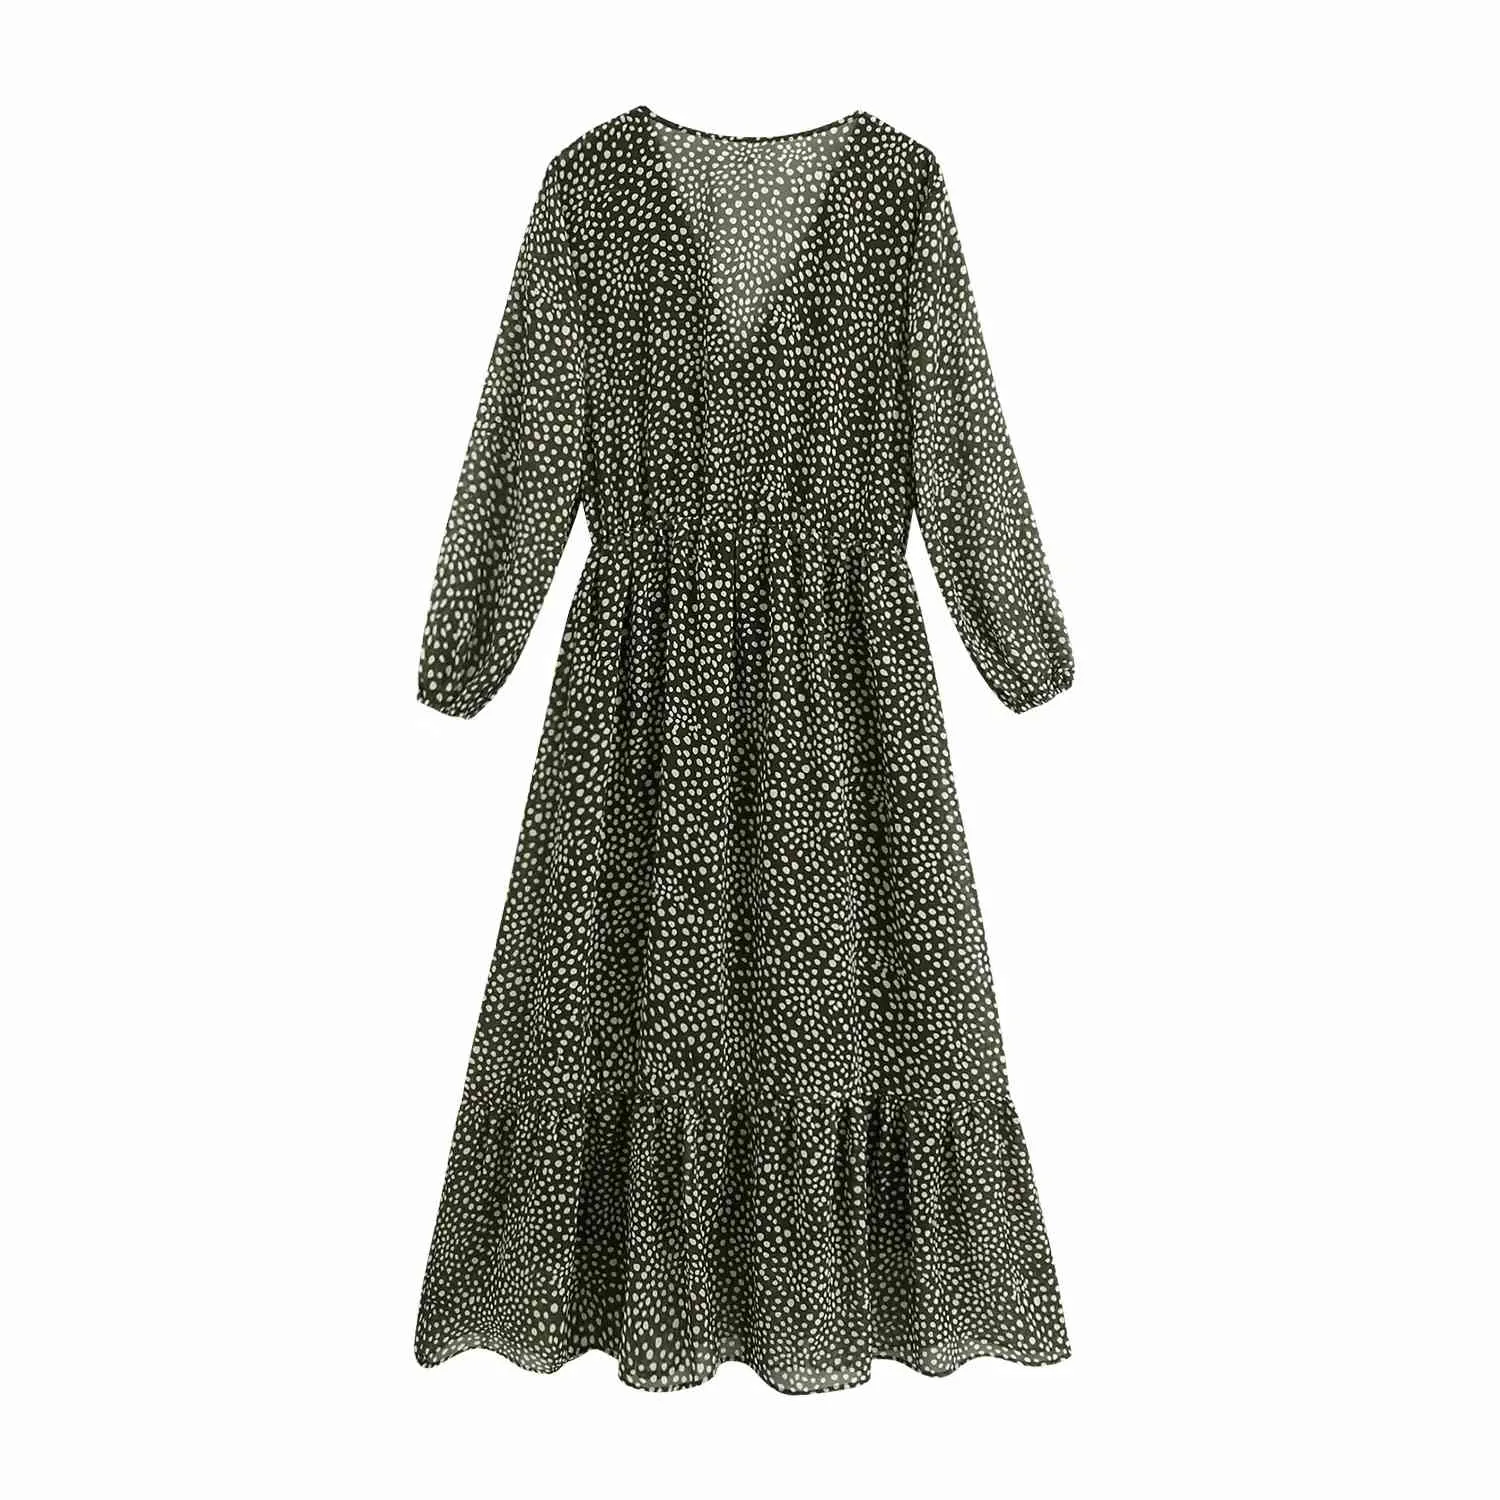 Pois automne hiver longue robe femmes col en v maxi en mousseline de soie robe élégante dames vert vintage robe vestidos 210415